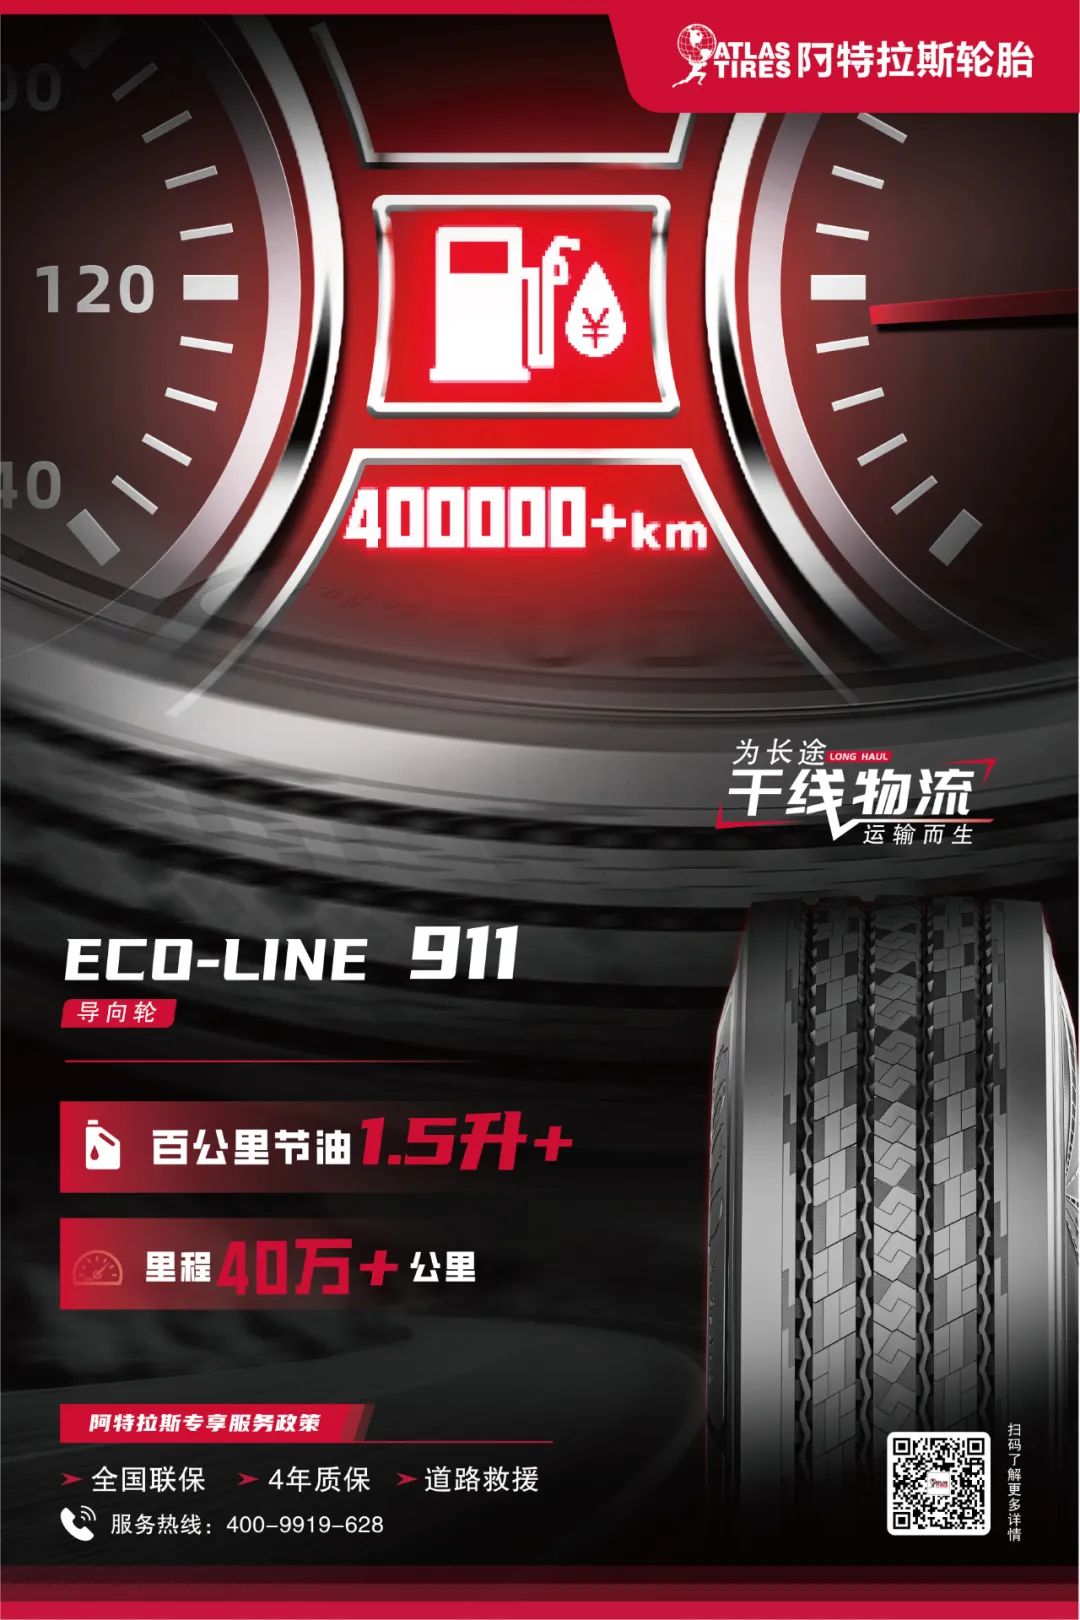 阿特拉斯ECO-LINE 911荣获奚仲奖“年度最佳快递快运轮胎”